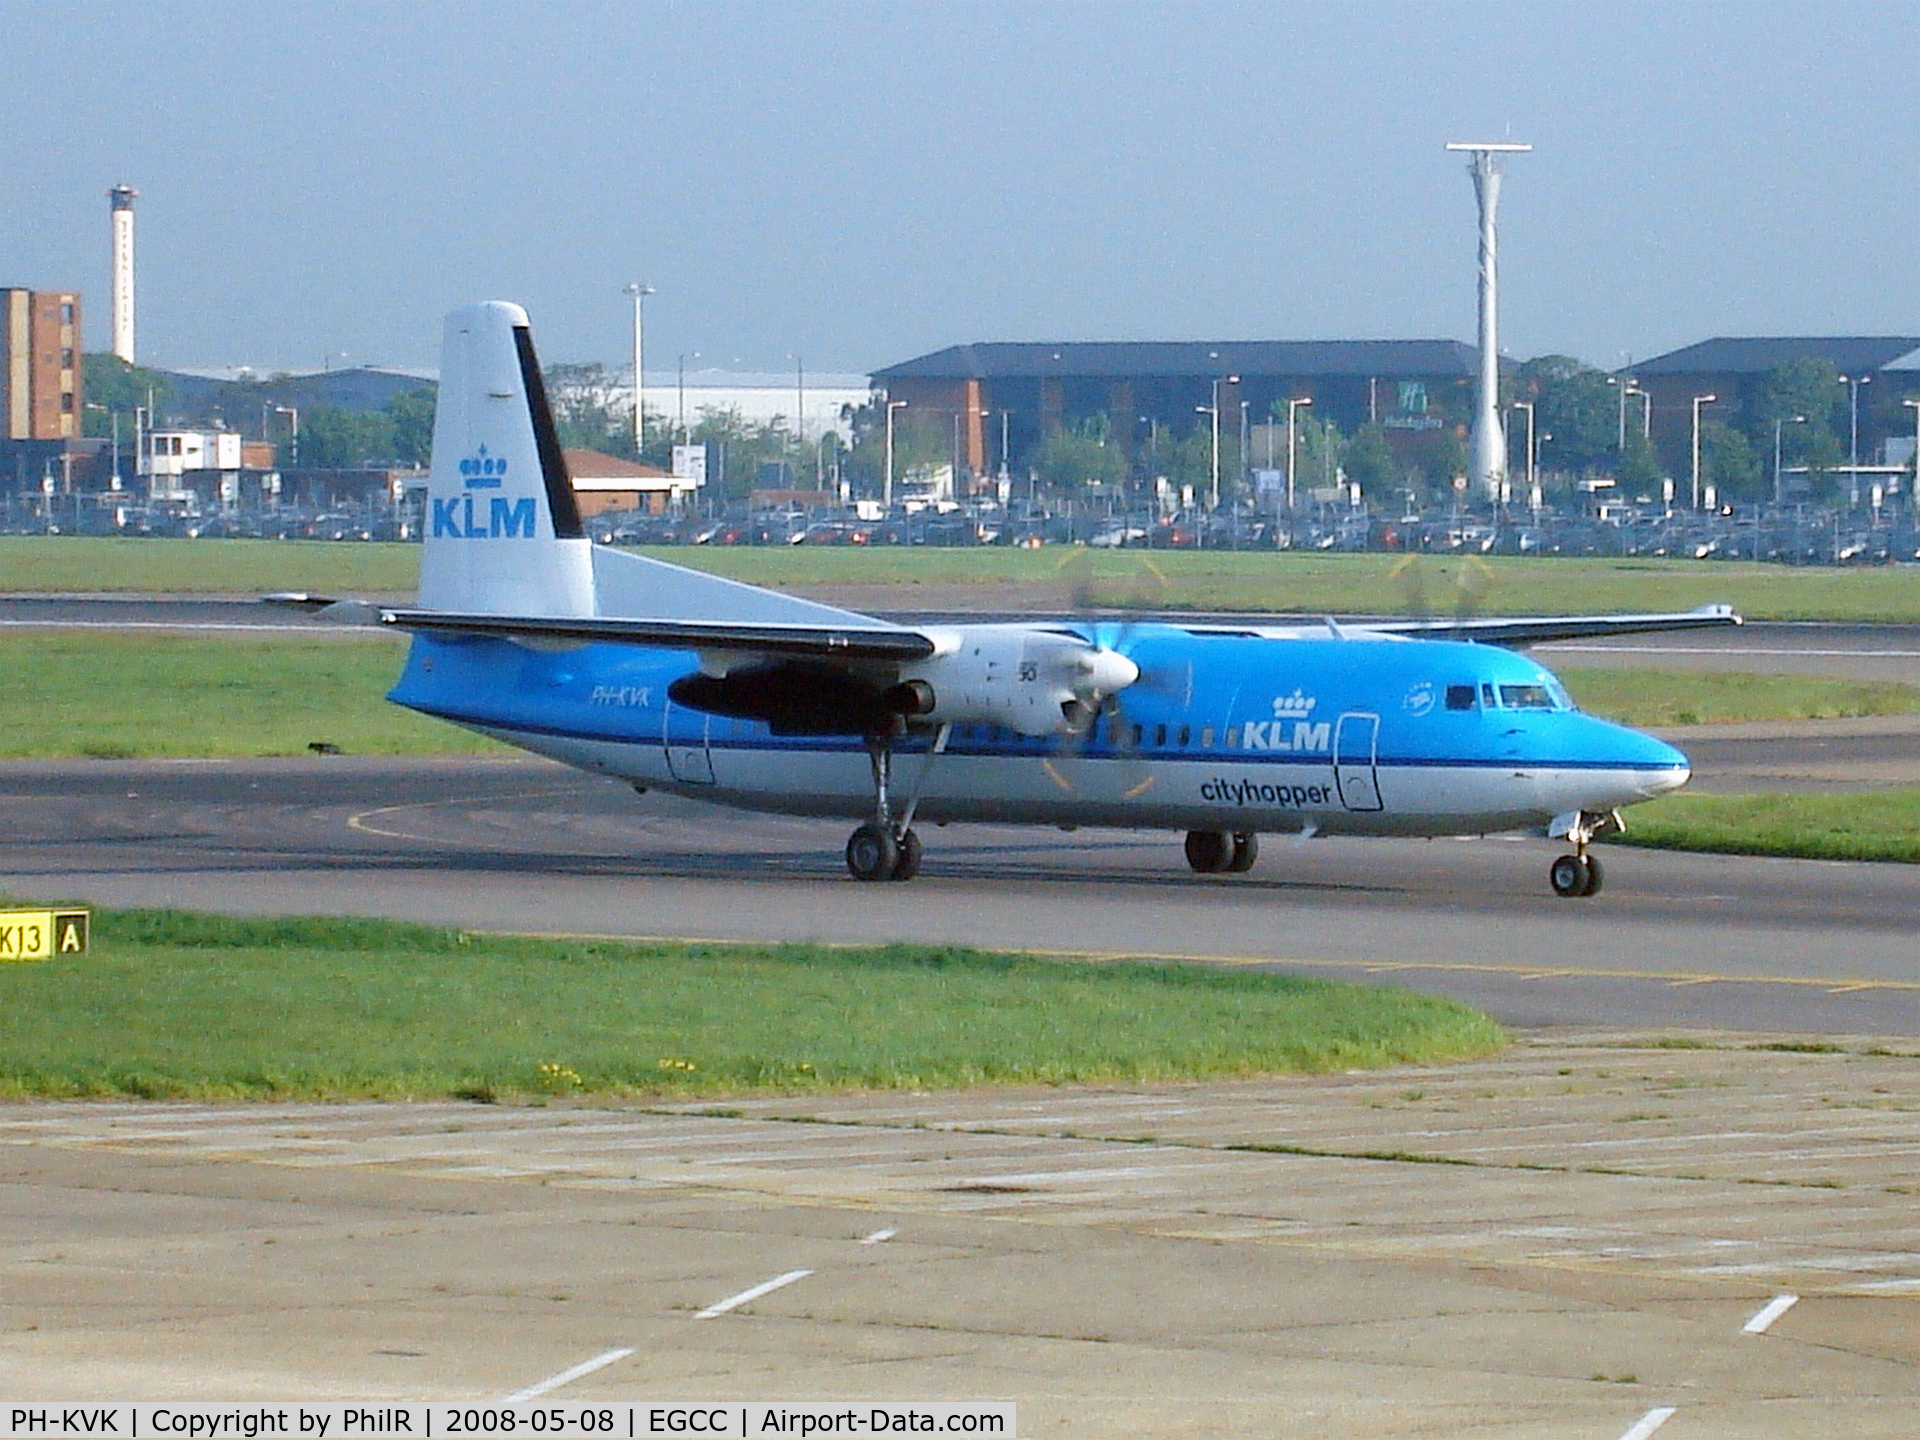 PH-KVK, 1991 Fokker 50 C/N 20219, PH-KVK 1991 Fokker 50 KLM Cityhopper MAN